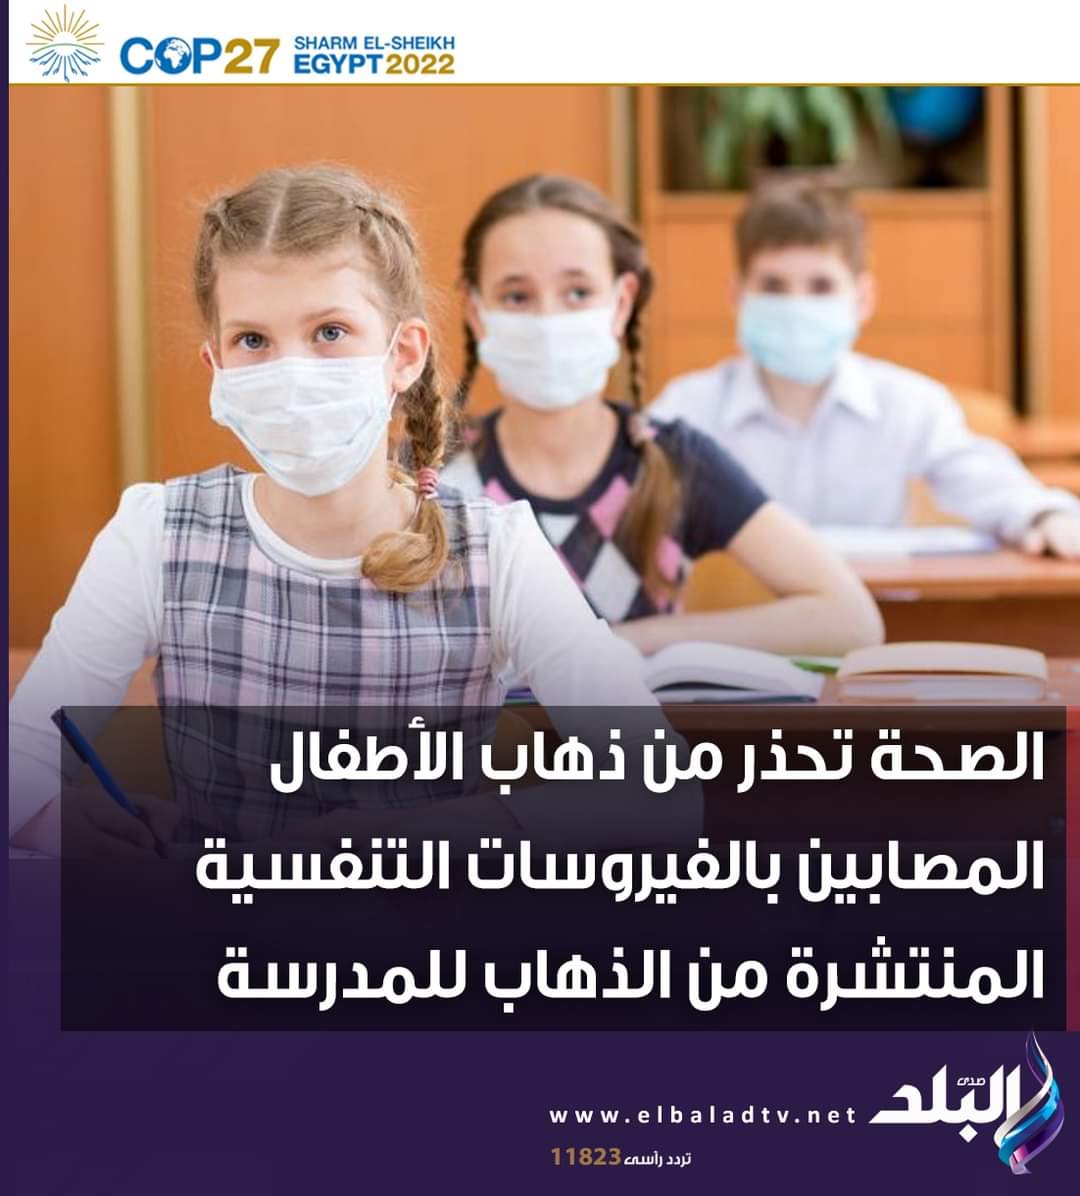 عاجل - وزارة الصحة تناشد أولياء أمور الطلاب المصابين بعدم ذهاب الأطفال المصابين بالفيروسات التنفسية المنتشرة إلى للمدرسة - اخبار الصحة